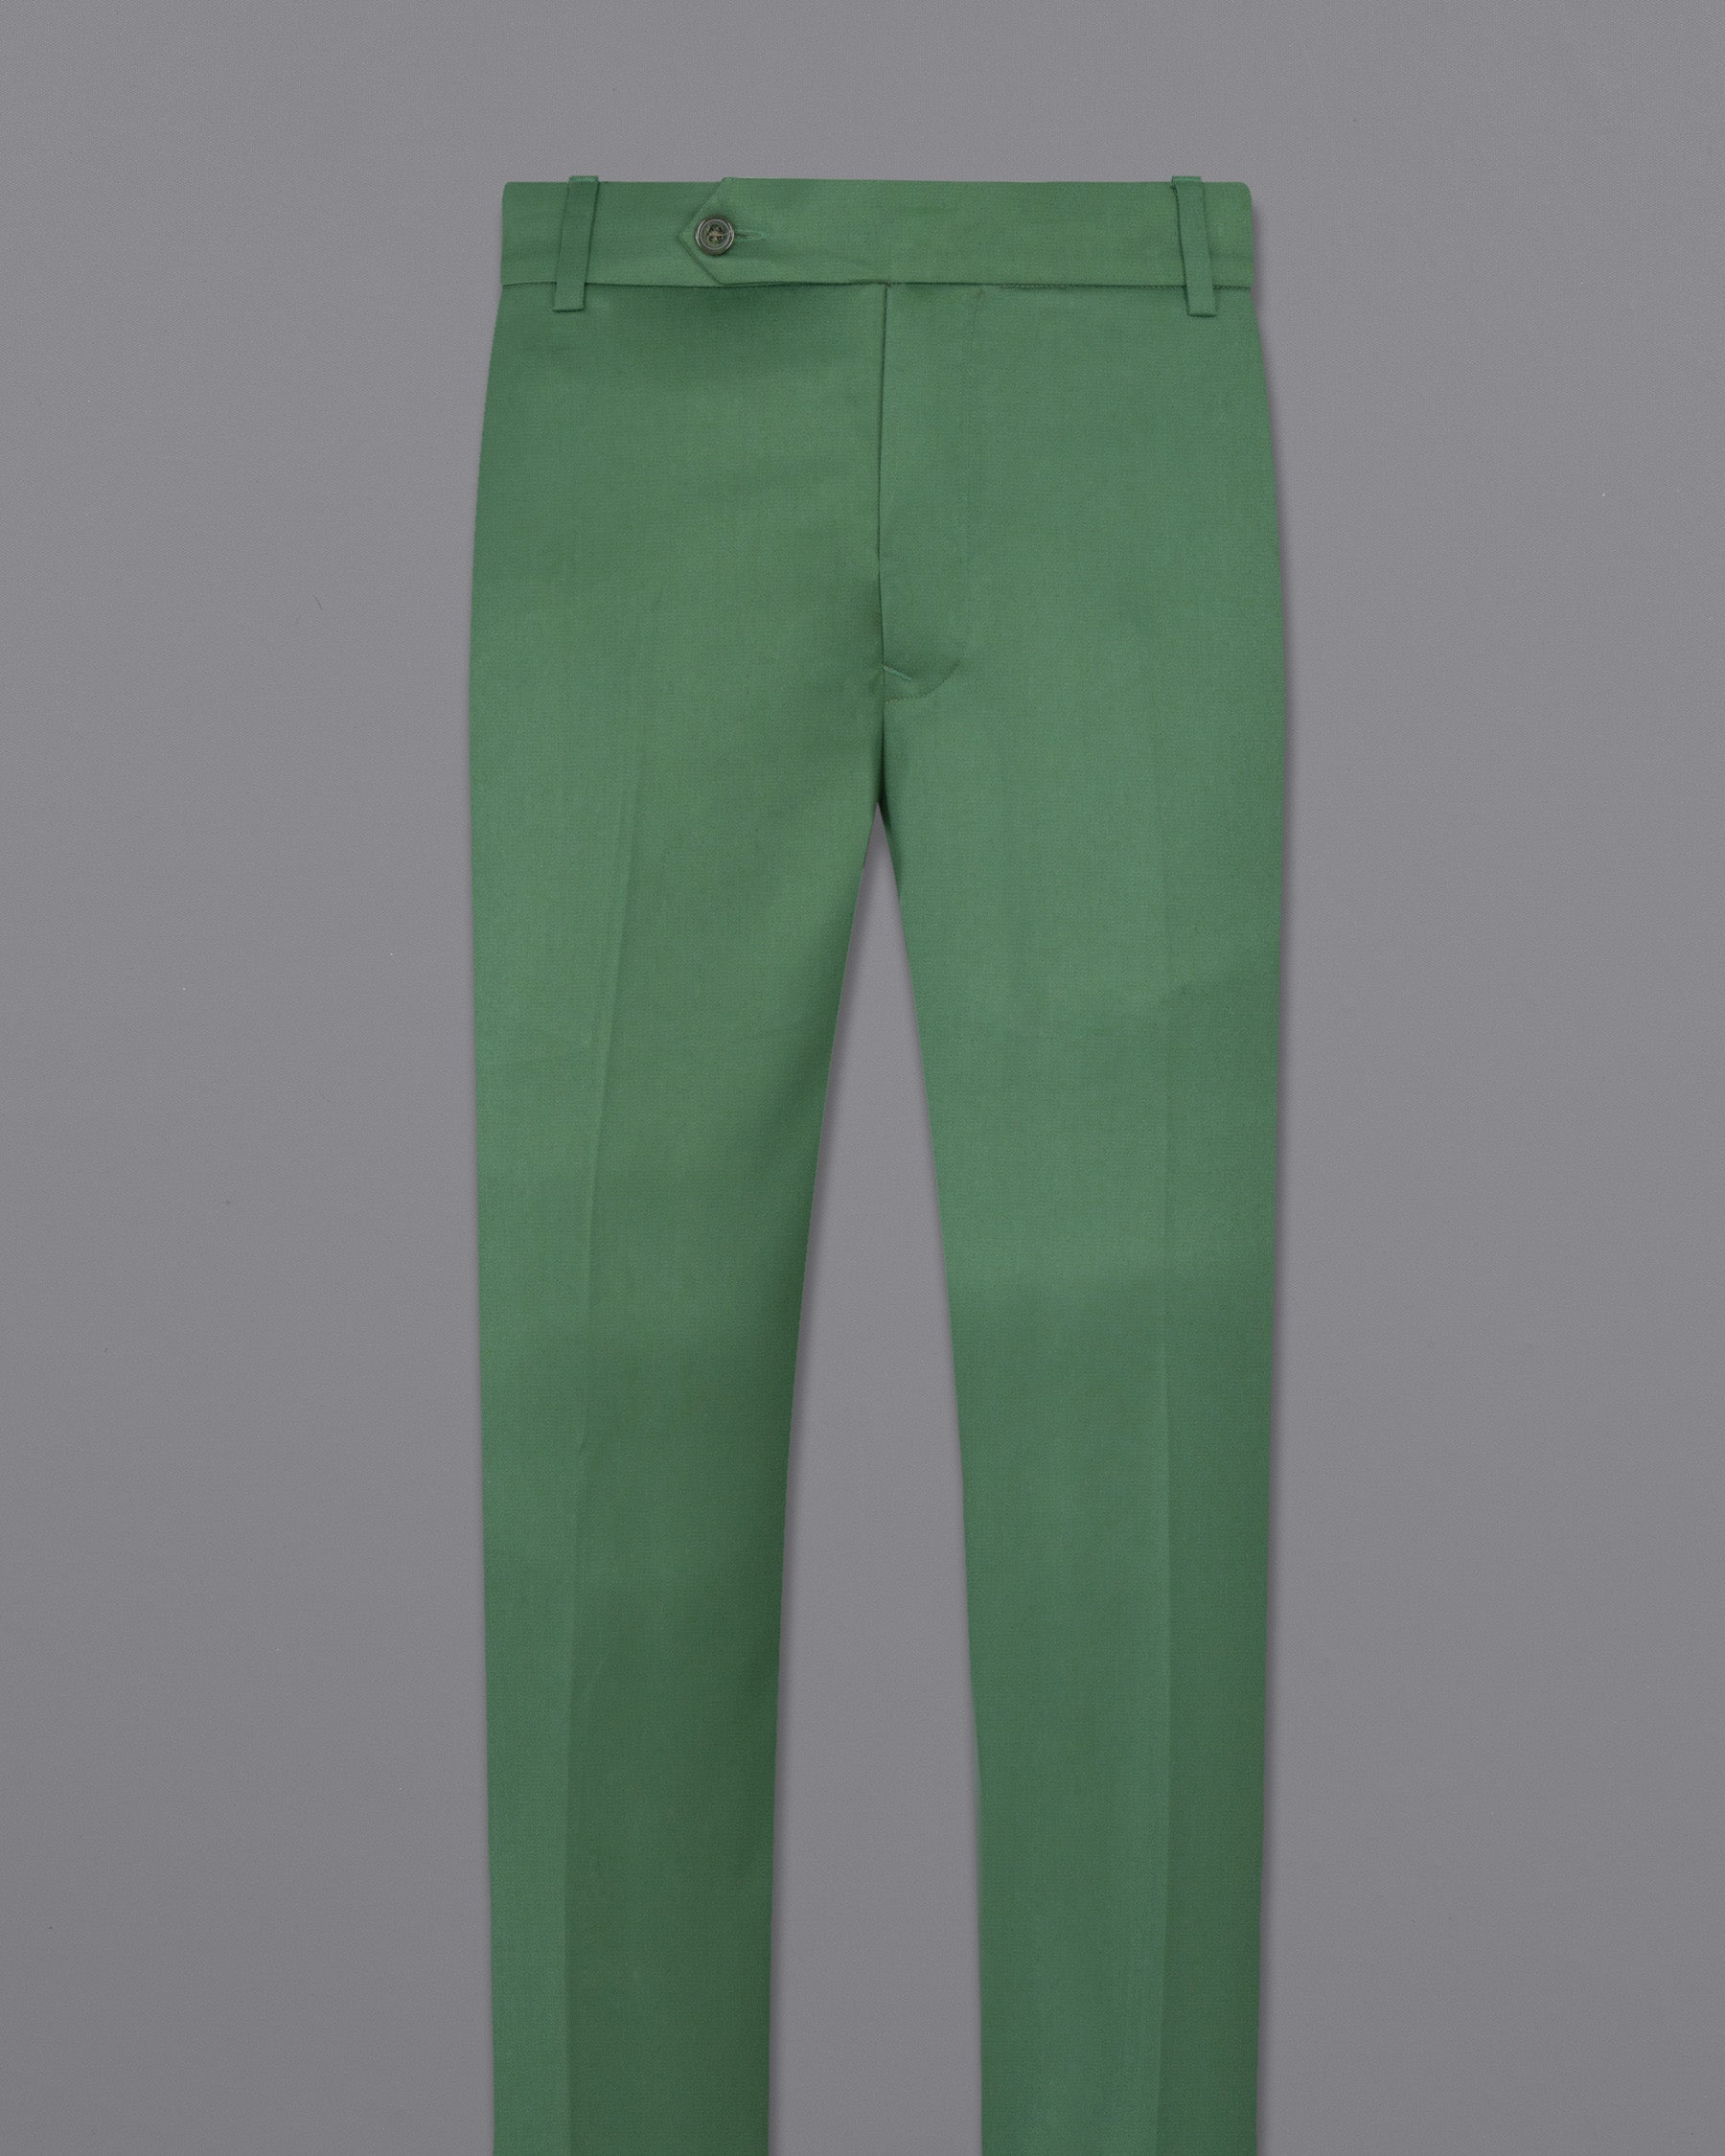  Finland's Green Woolrich Pant T1524-28, T1524-30, T1524-32, T1524-34, T1524-36, T1524-38, T1524-40, T1524-42, T1524-44